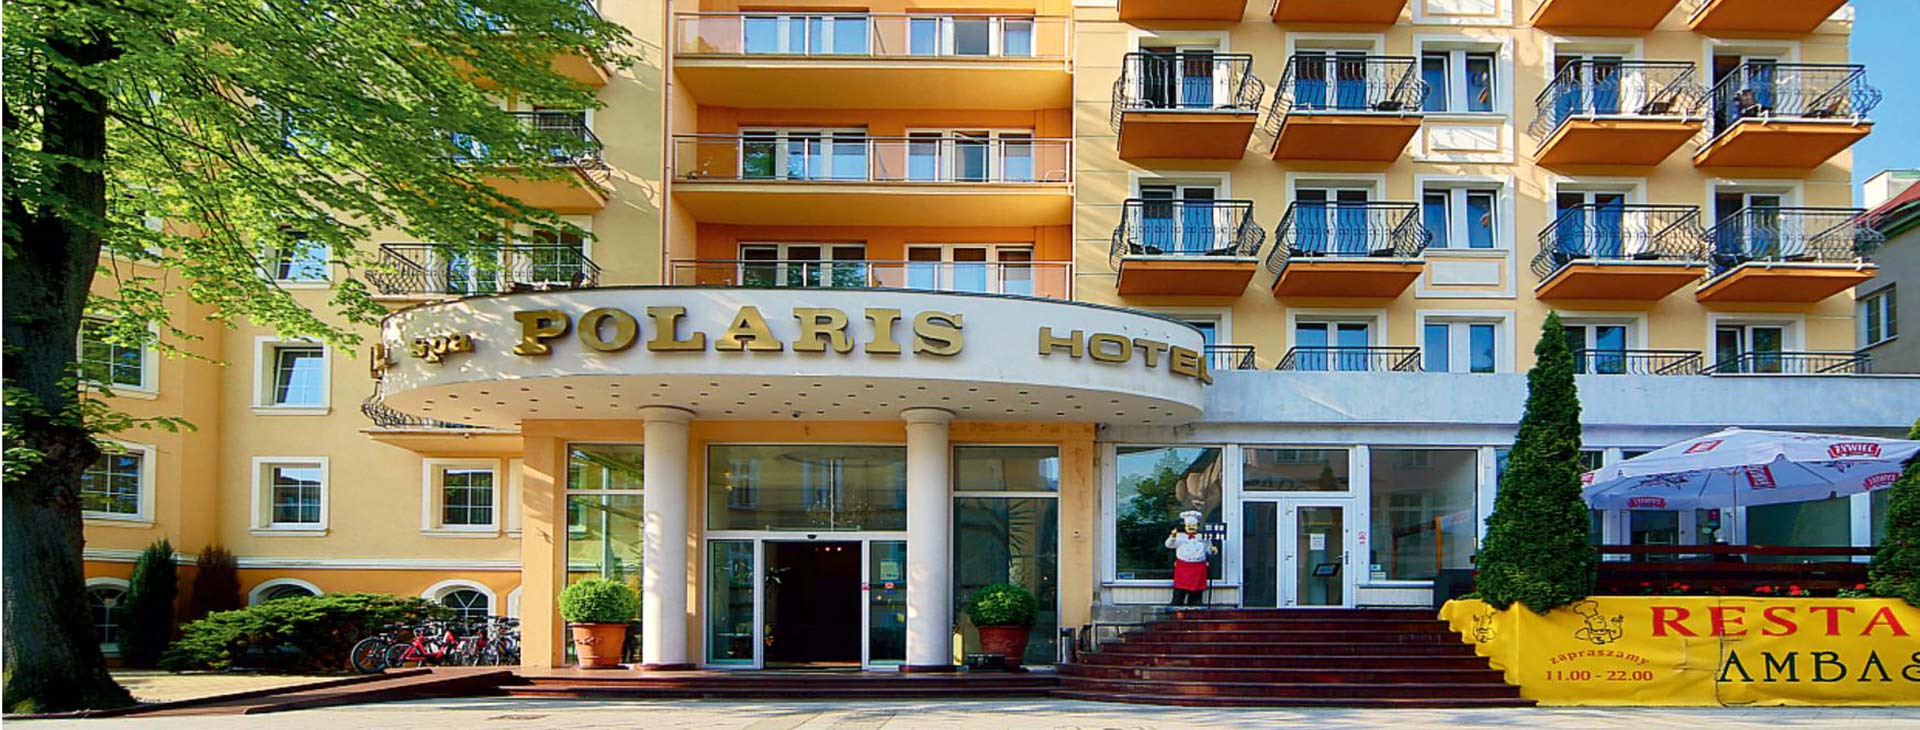 Hotel Polaris Obrázok0